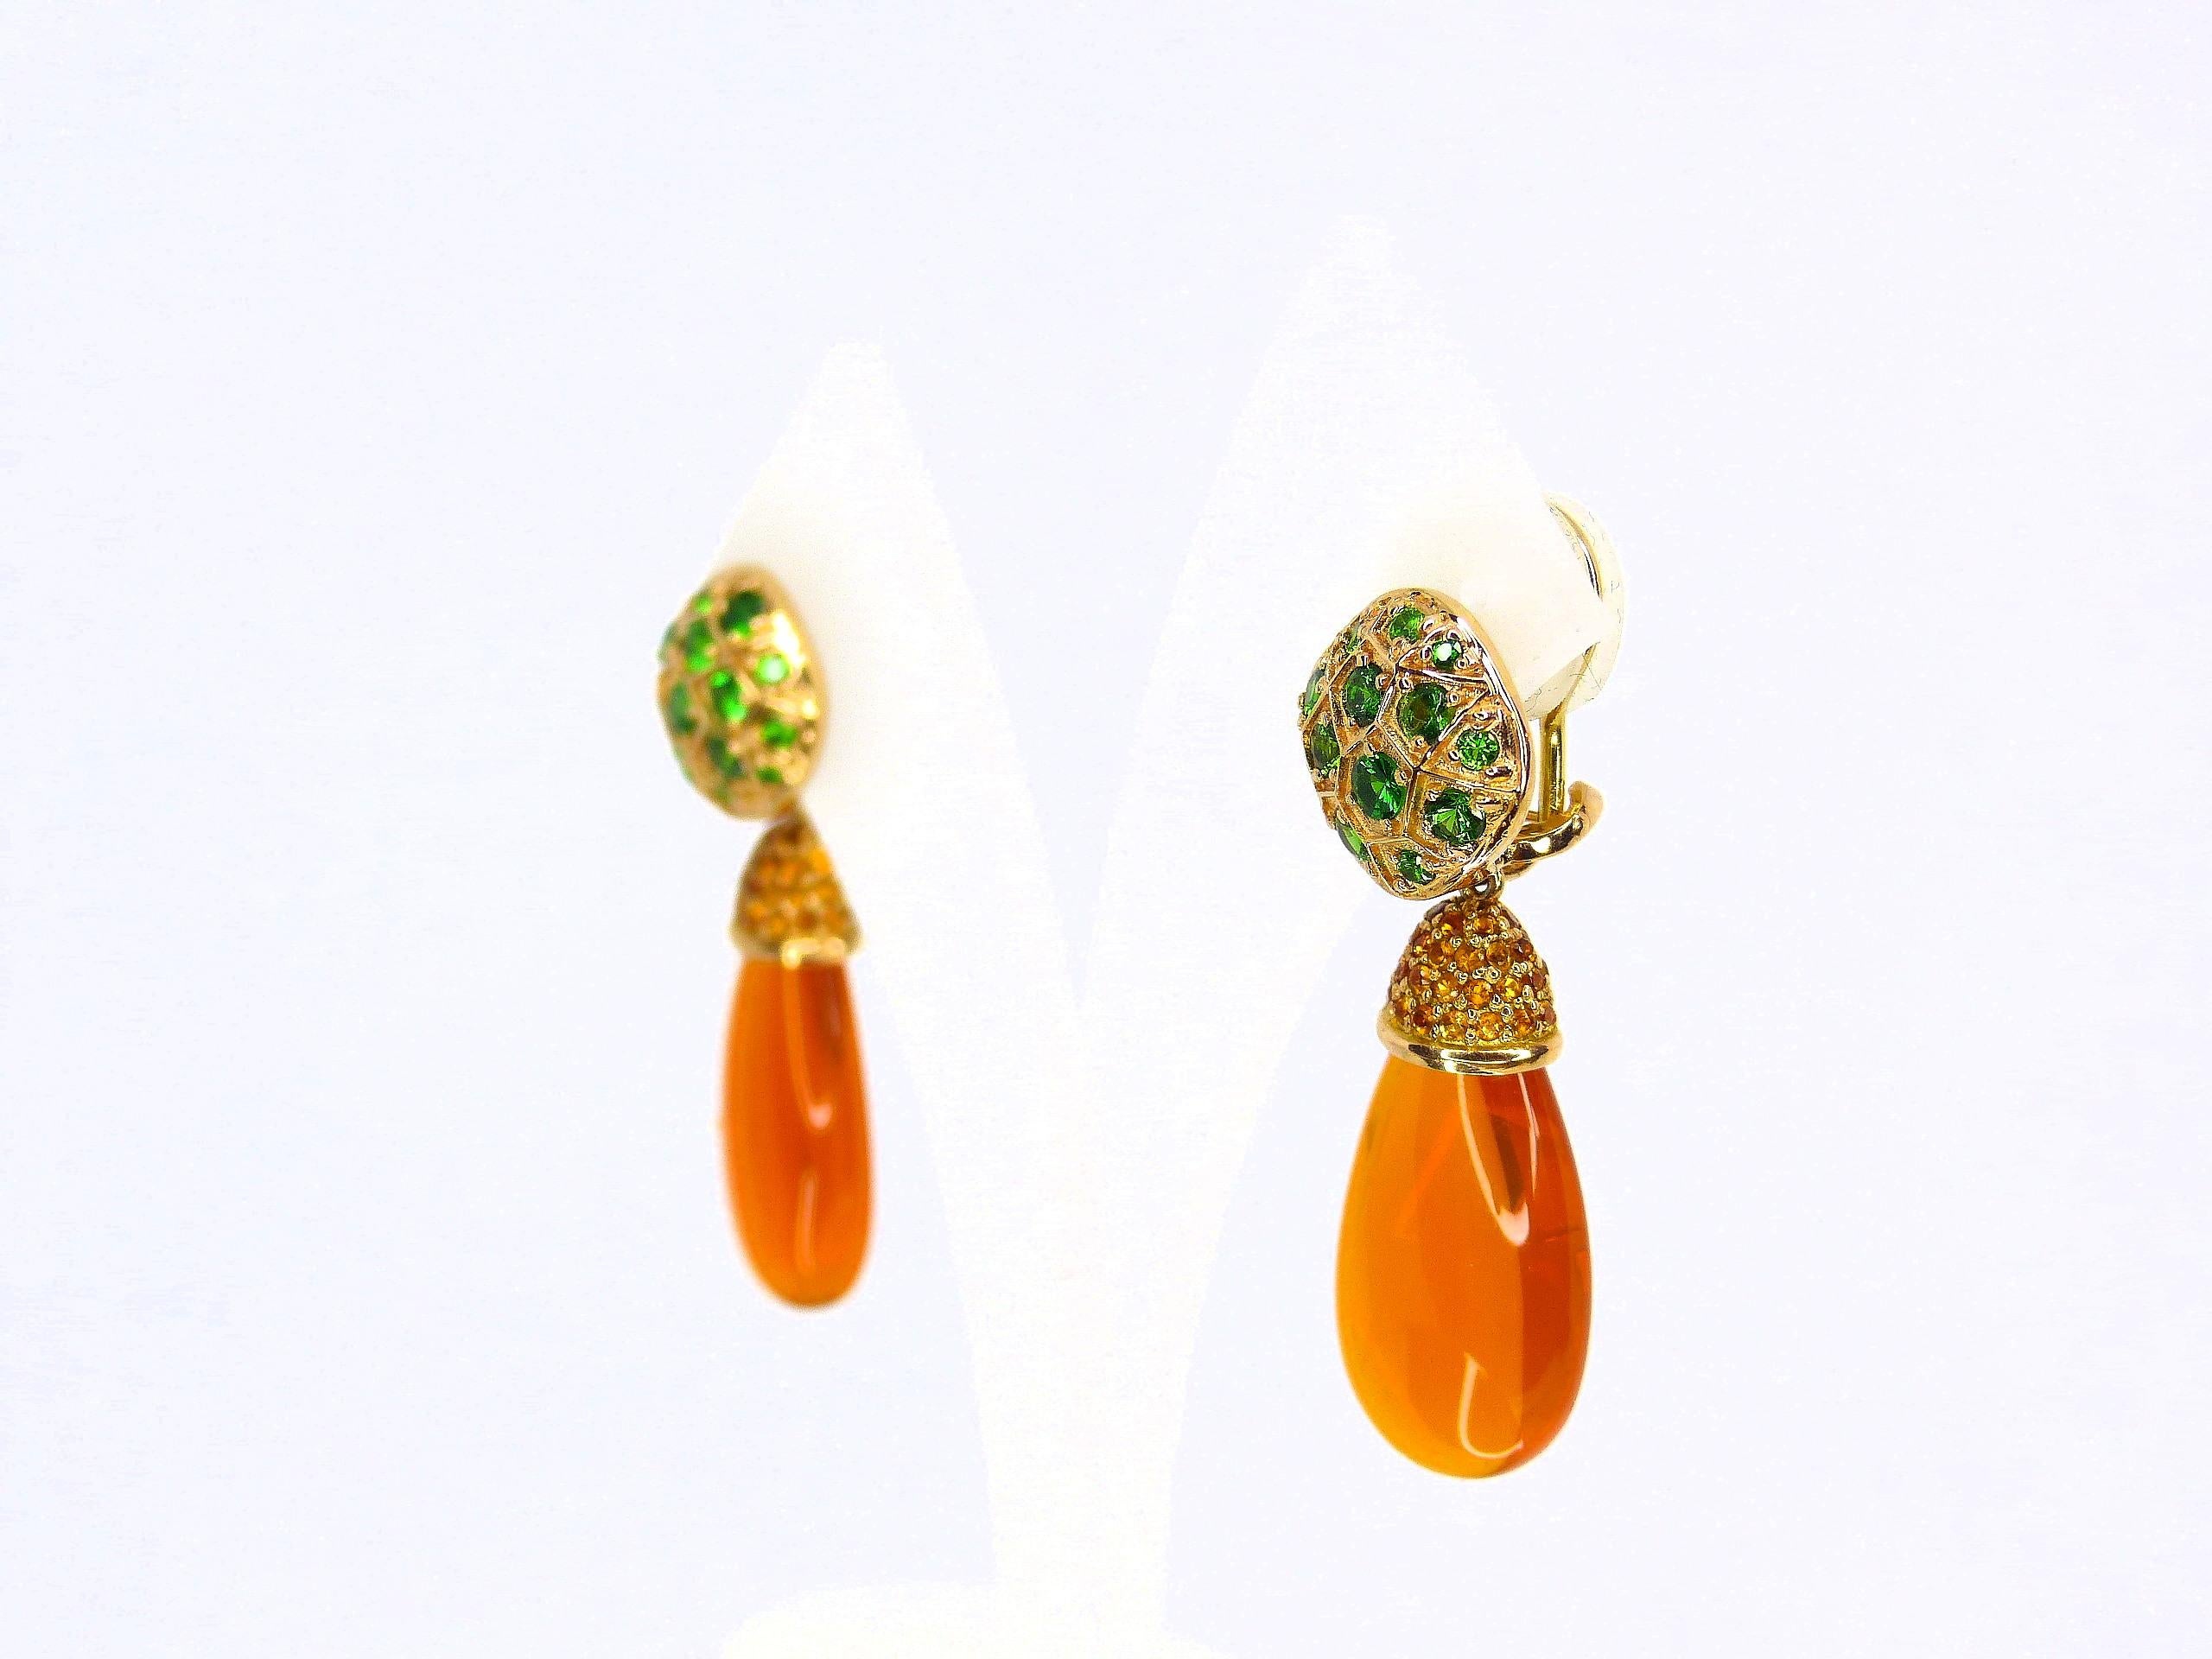 Thomas Leyser est réputé pour ses créations de bijoux contemporains utilisant des pierres précieuses fines.

Cette paire de boucles d'oreilles en or rouge 18k (3.45g) est sertie de 2x Briolets mexicains Fireopal fins (28x13x8mm, 29.49ct) + 70x